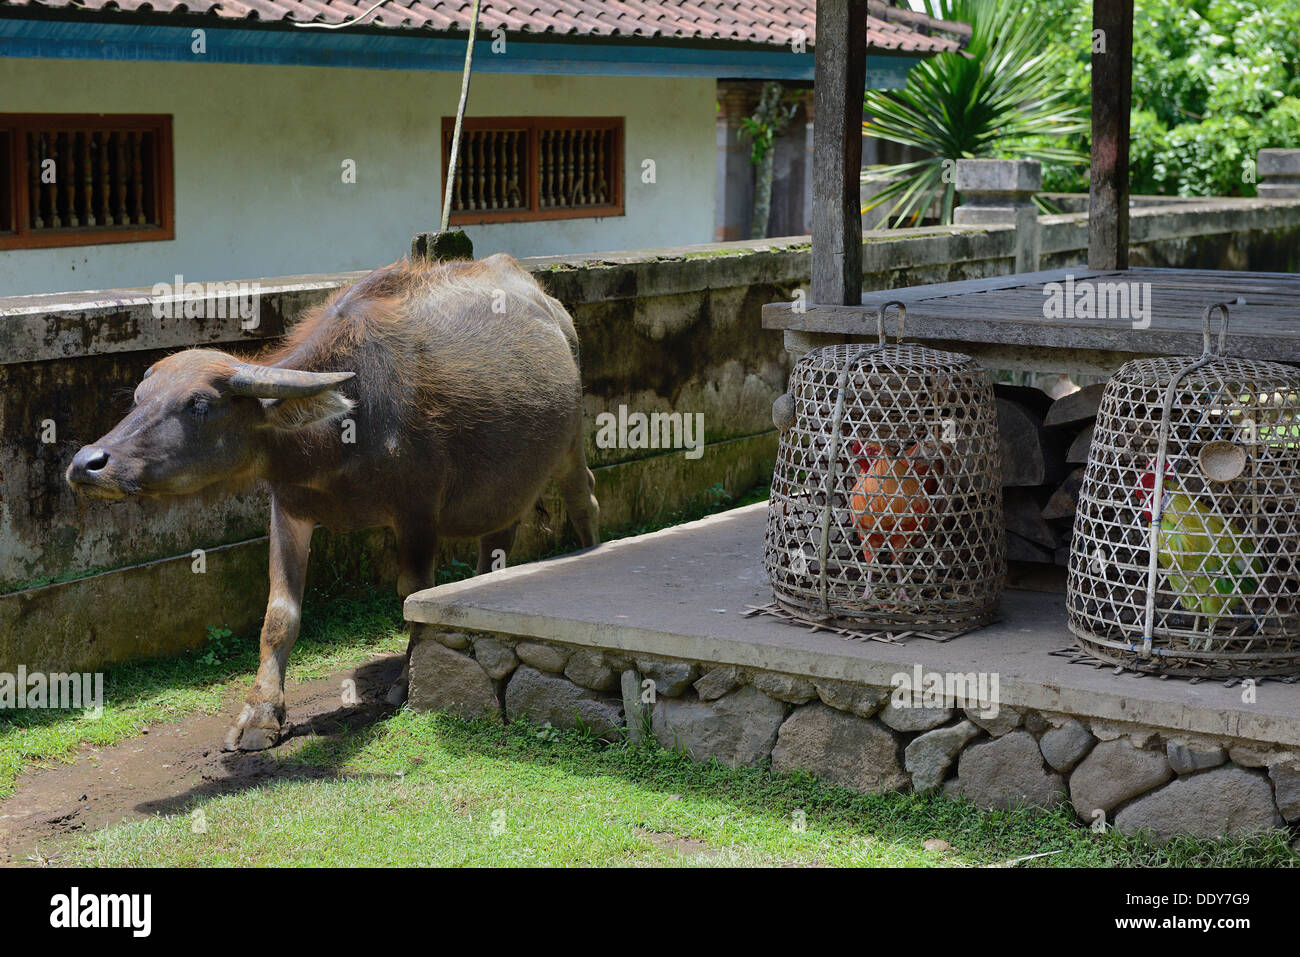 Indonesia, island of Bali, Tenganan, buffalo walking free in the village Stock Photo